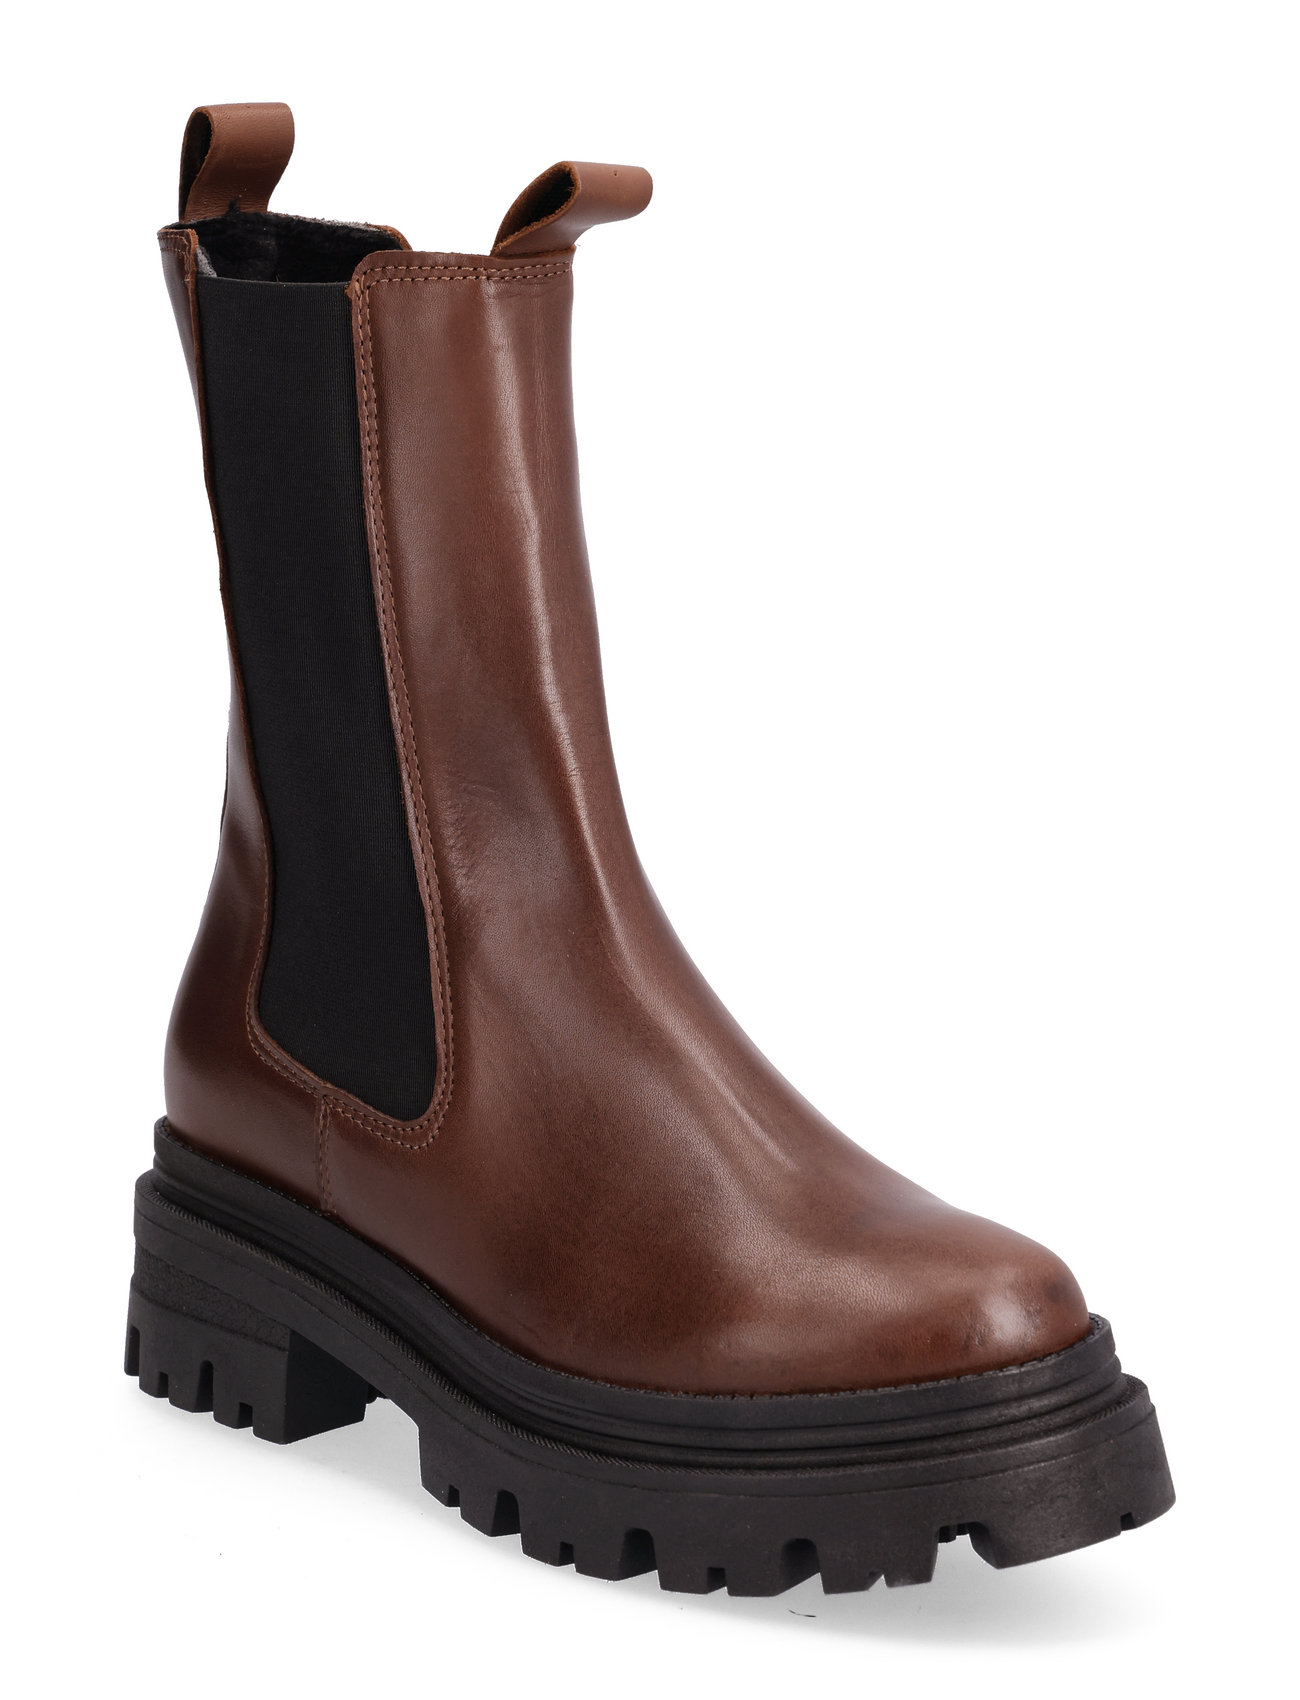 Tamaris Women Boots (Cognac Leather), 749.25 kr | udvalg af mærker | Booztlet.com